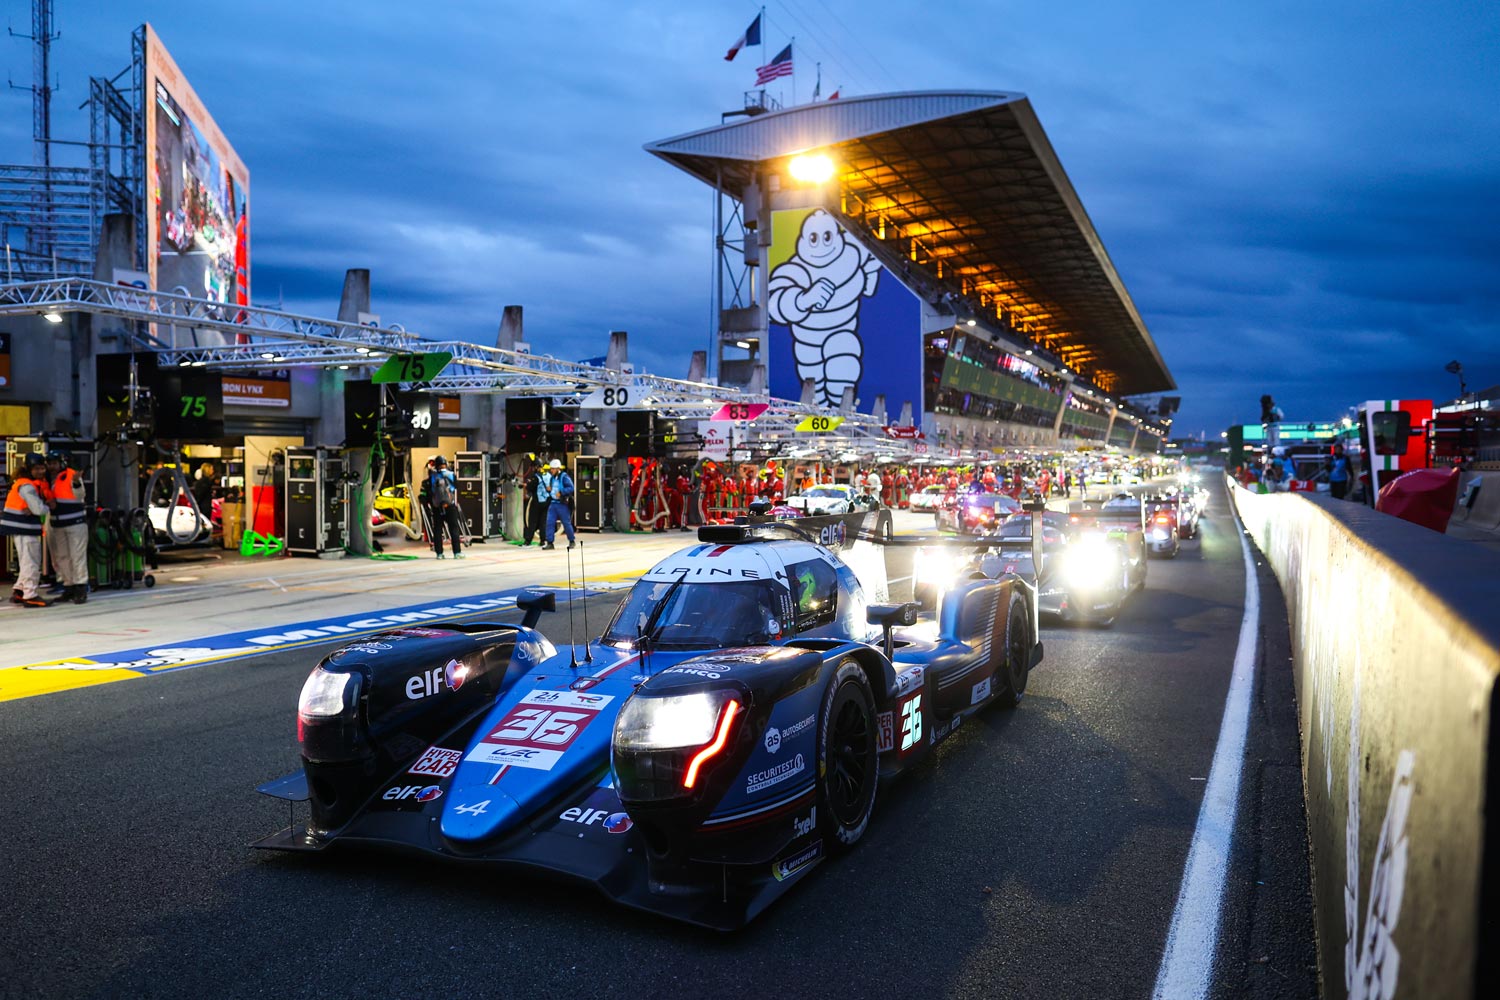 La 24h Du Mans, la più celebre corsa di endurance del mondo, giunge alla 90ª edizione è pronta ad accendere i motori.